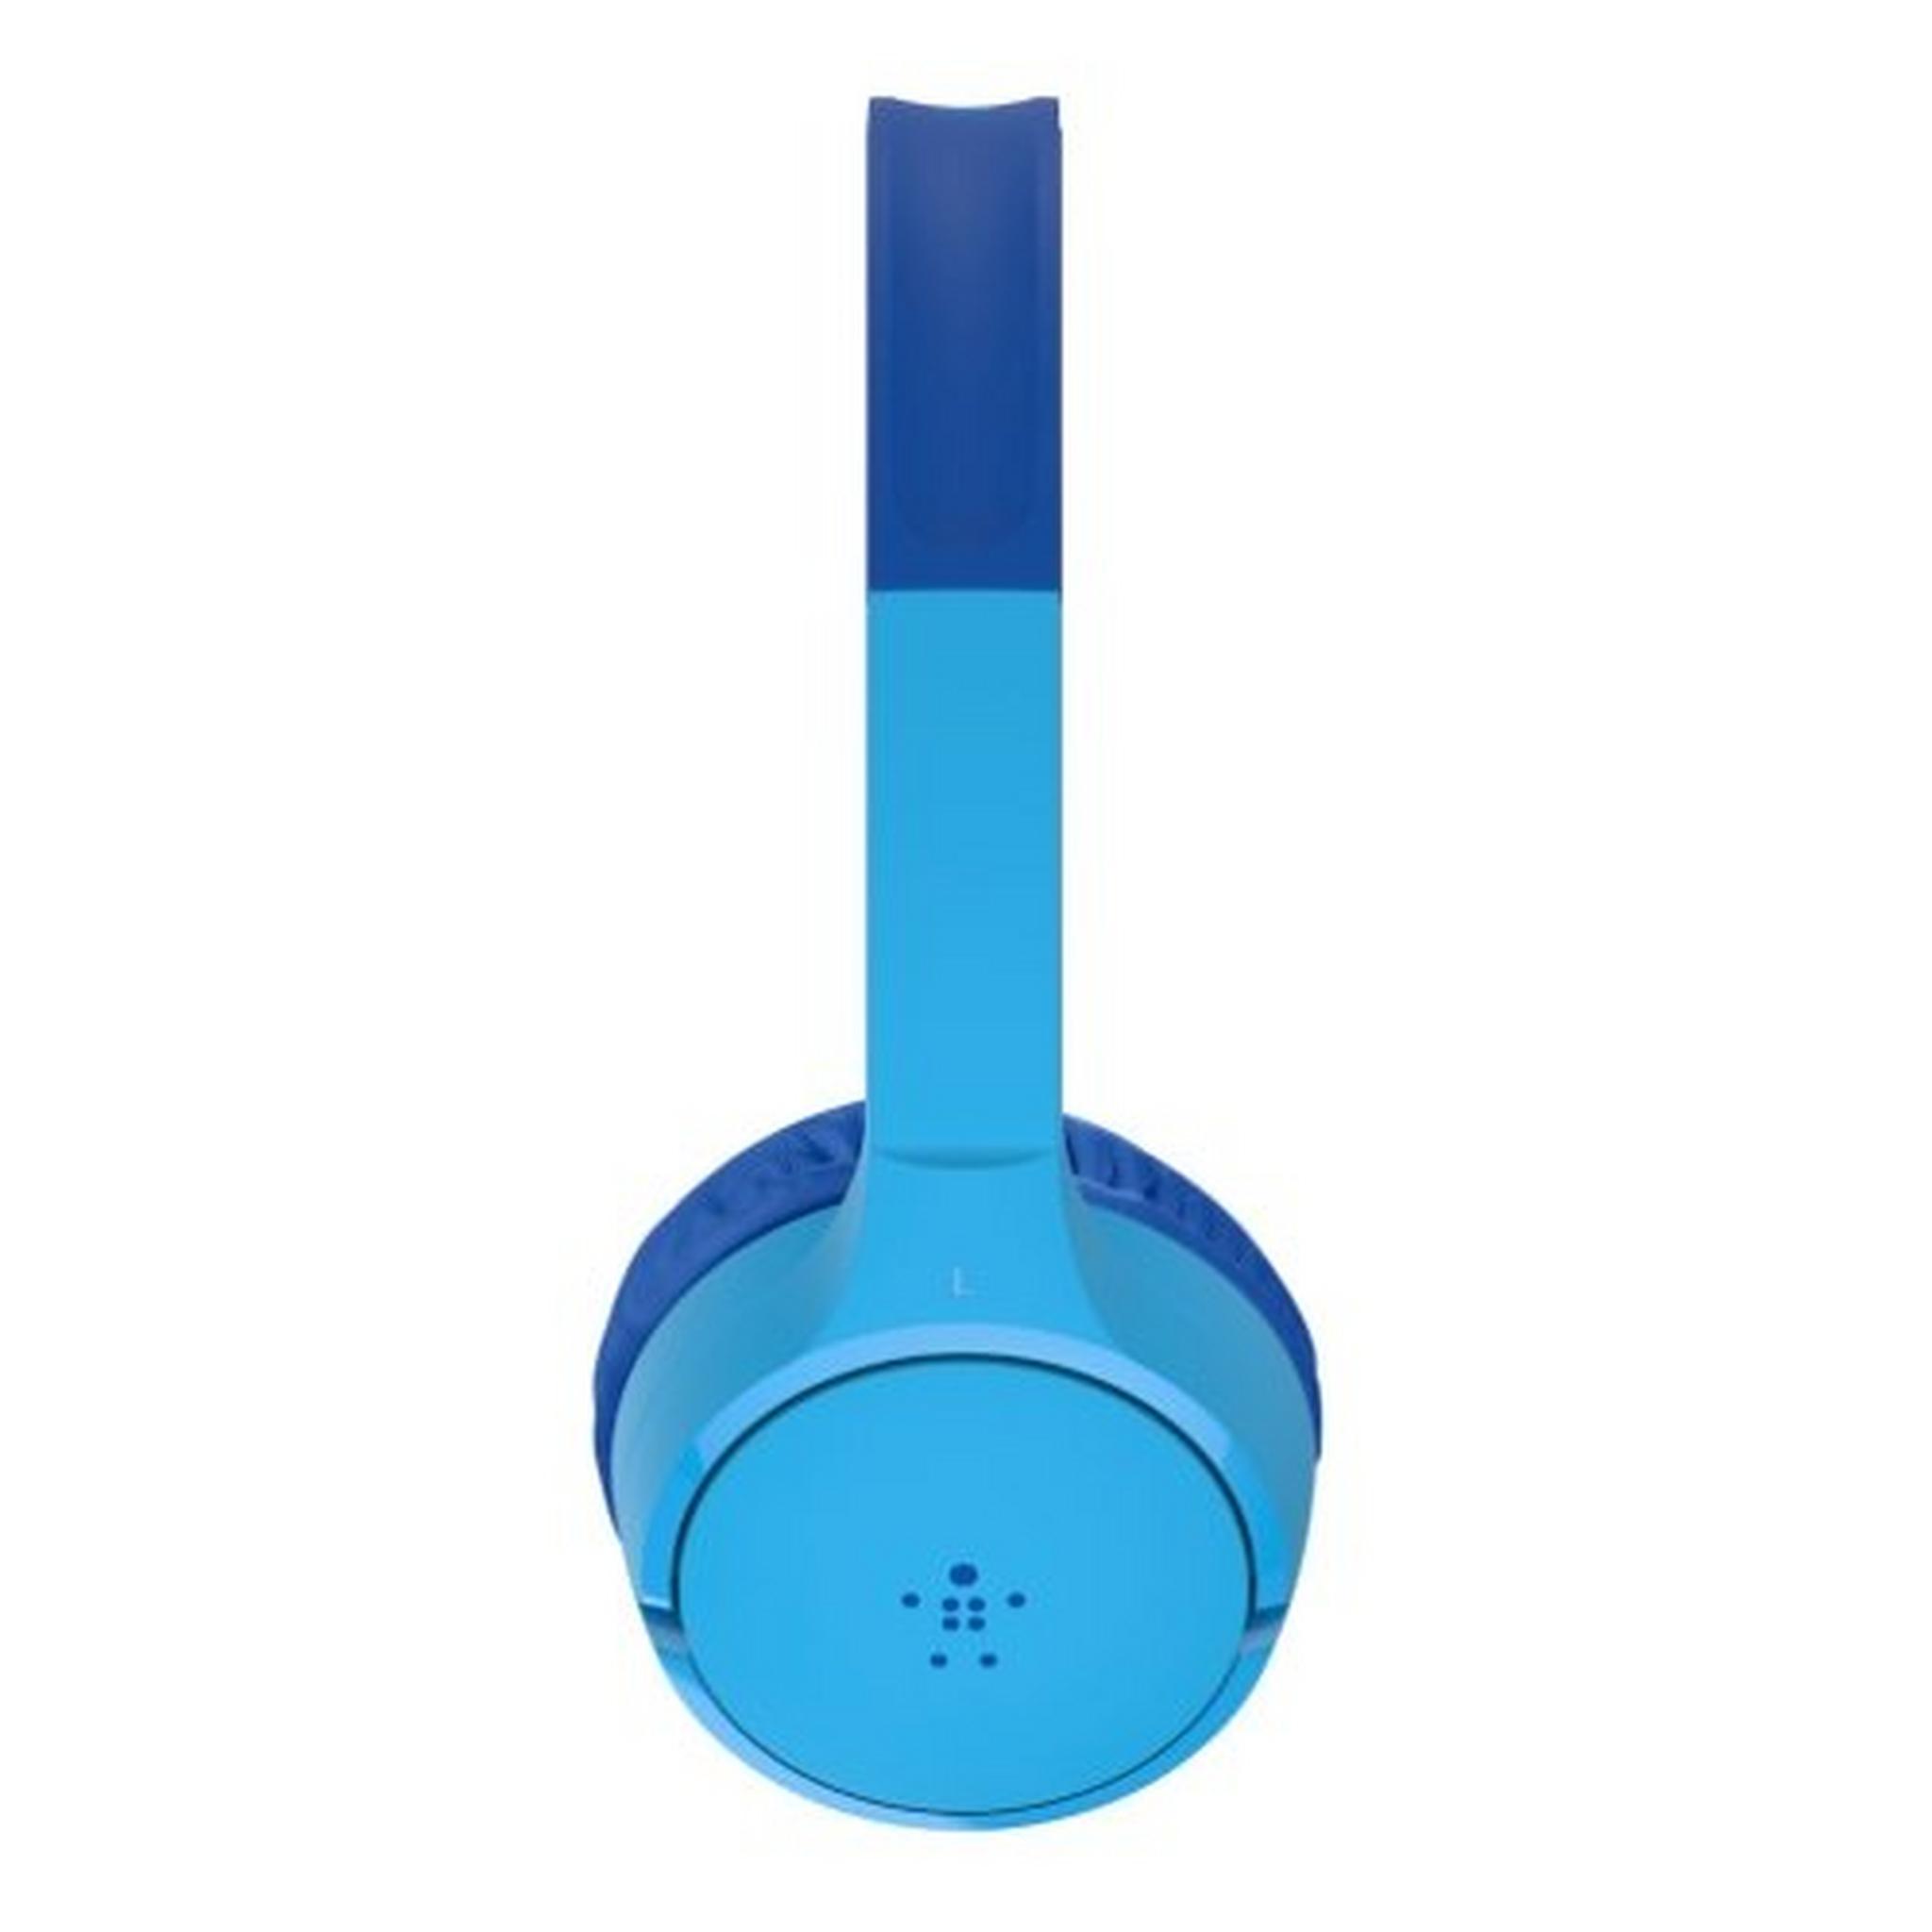 Belkin SoundForm Mini Wireless On-Ear Kids Headphones - Blue